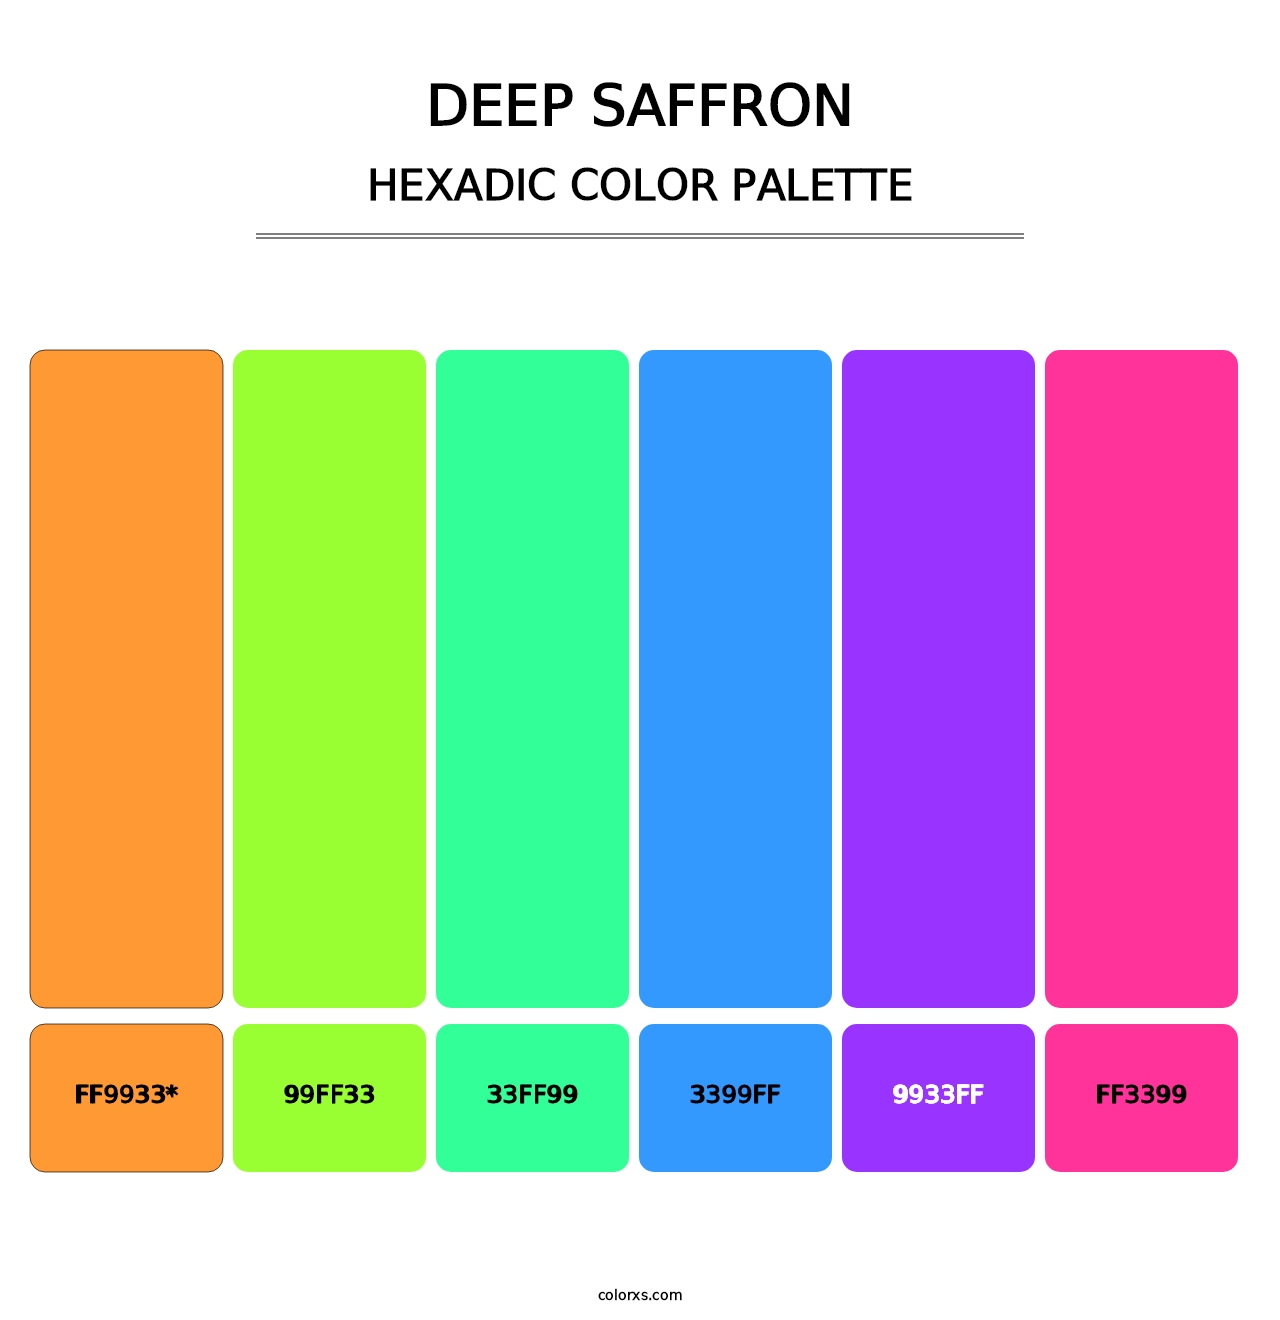 Deep Saffron - Hexadic Color Palette